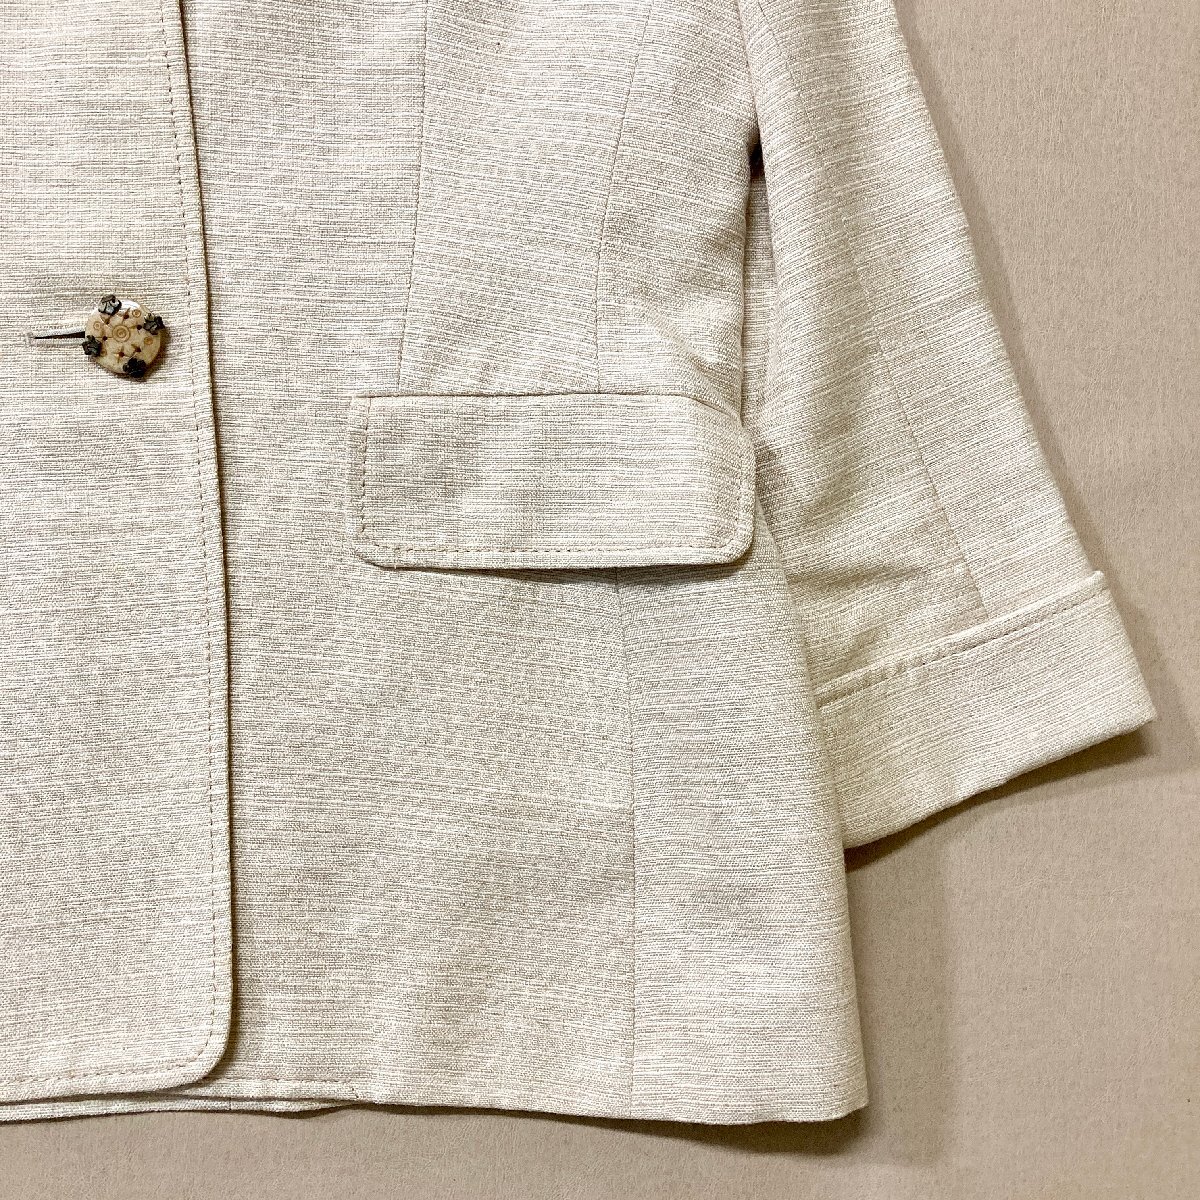 ★vintage Christian Dior クリスチャンディオール スーツ サイズ 9 ベージュ セットアップ ジャケット スカート レディース 絹混 0.7kg★の画像6